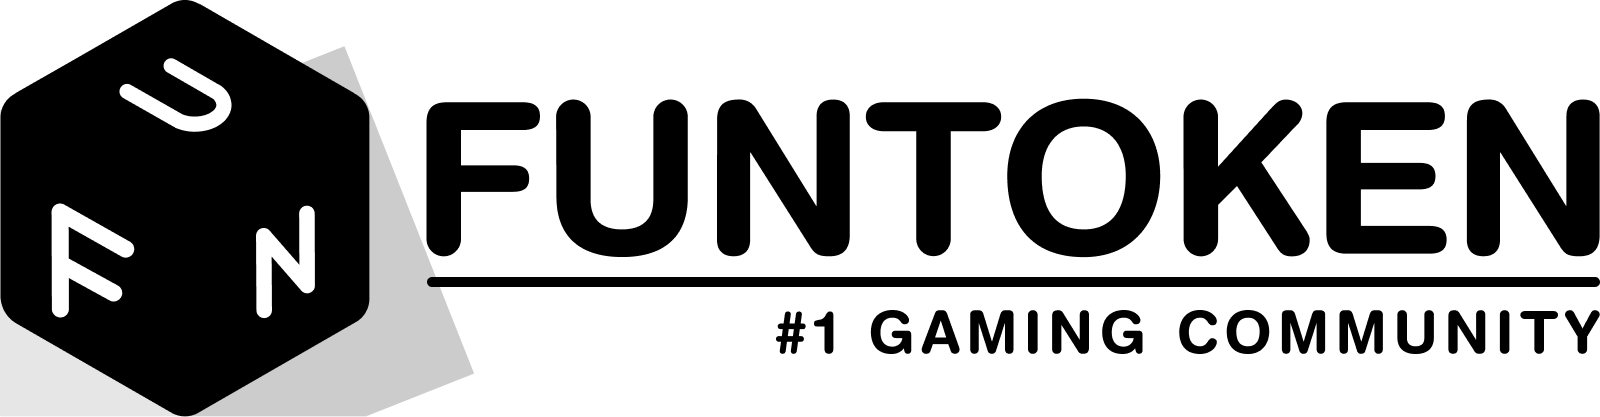 funtoken-logo
